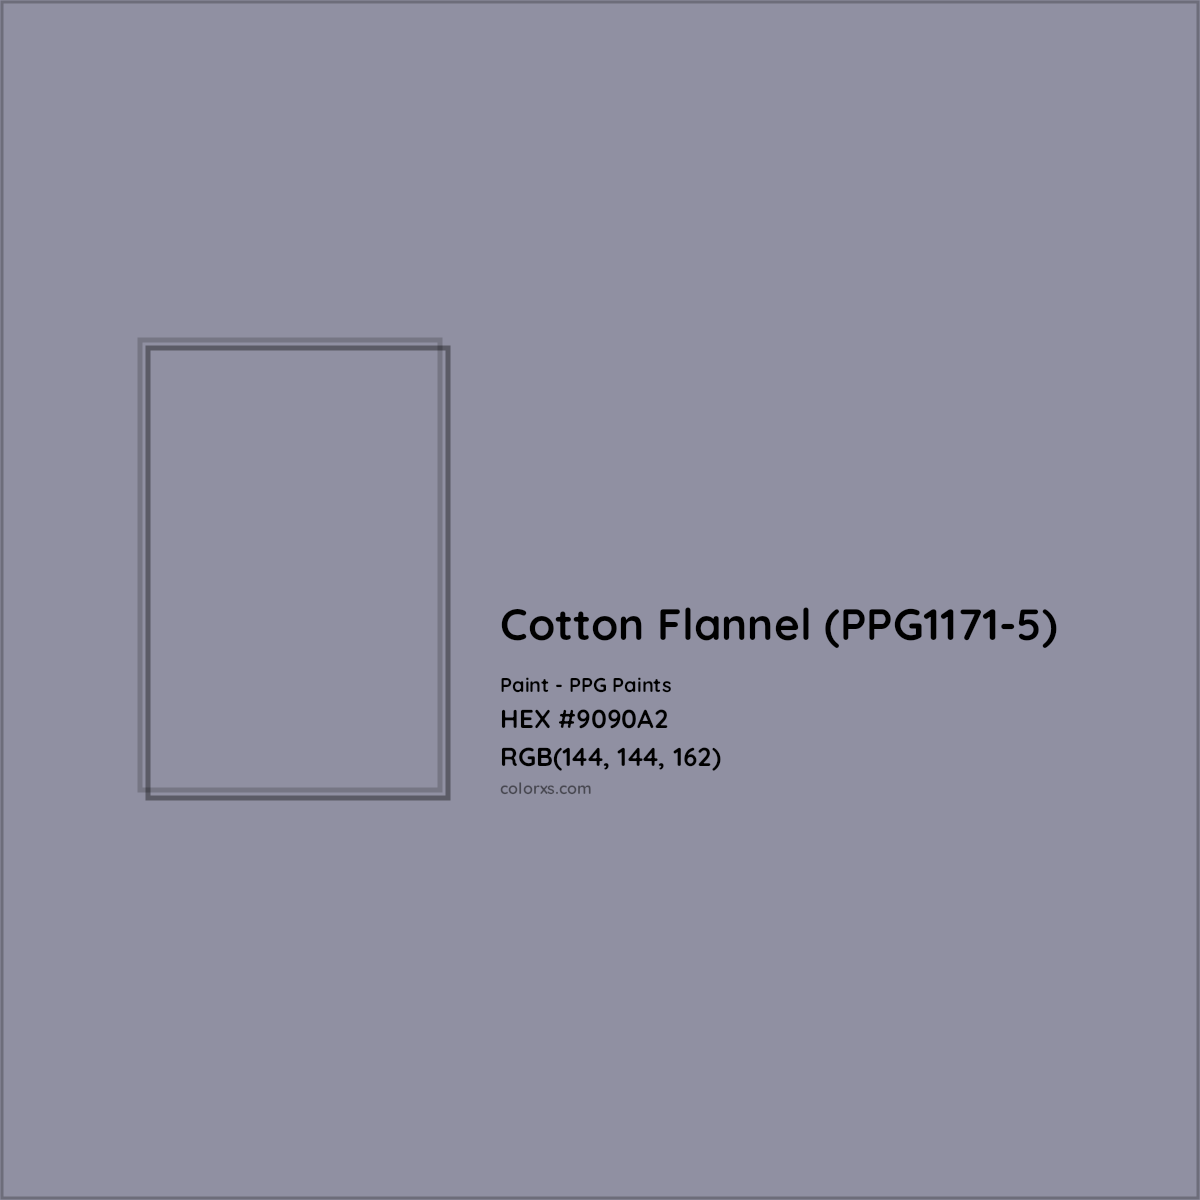 HEX #9090A2 Cotton Flannel (PPG1171-5) Paint PPG Paints - Color Code